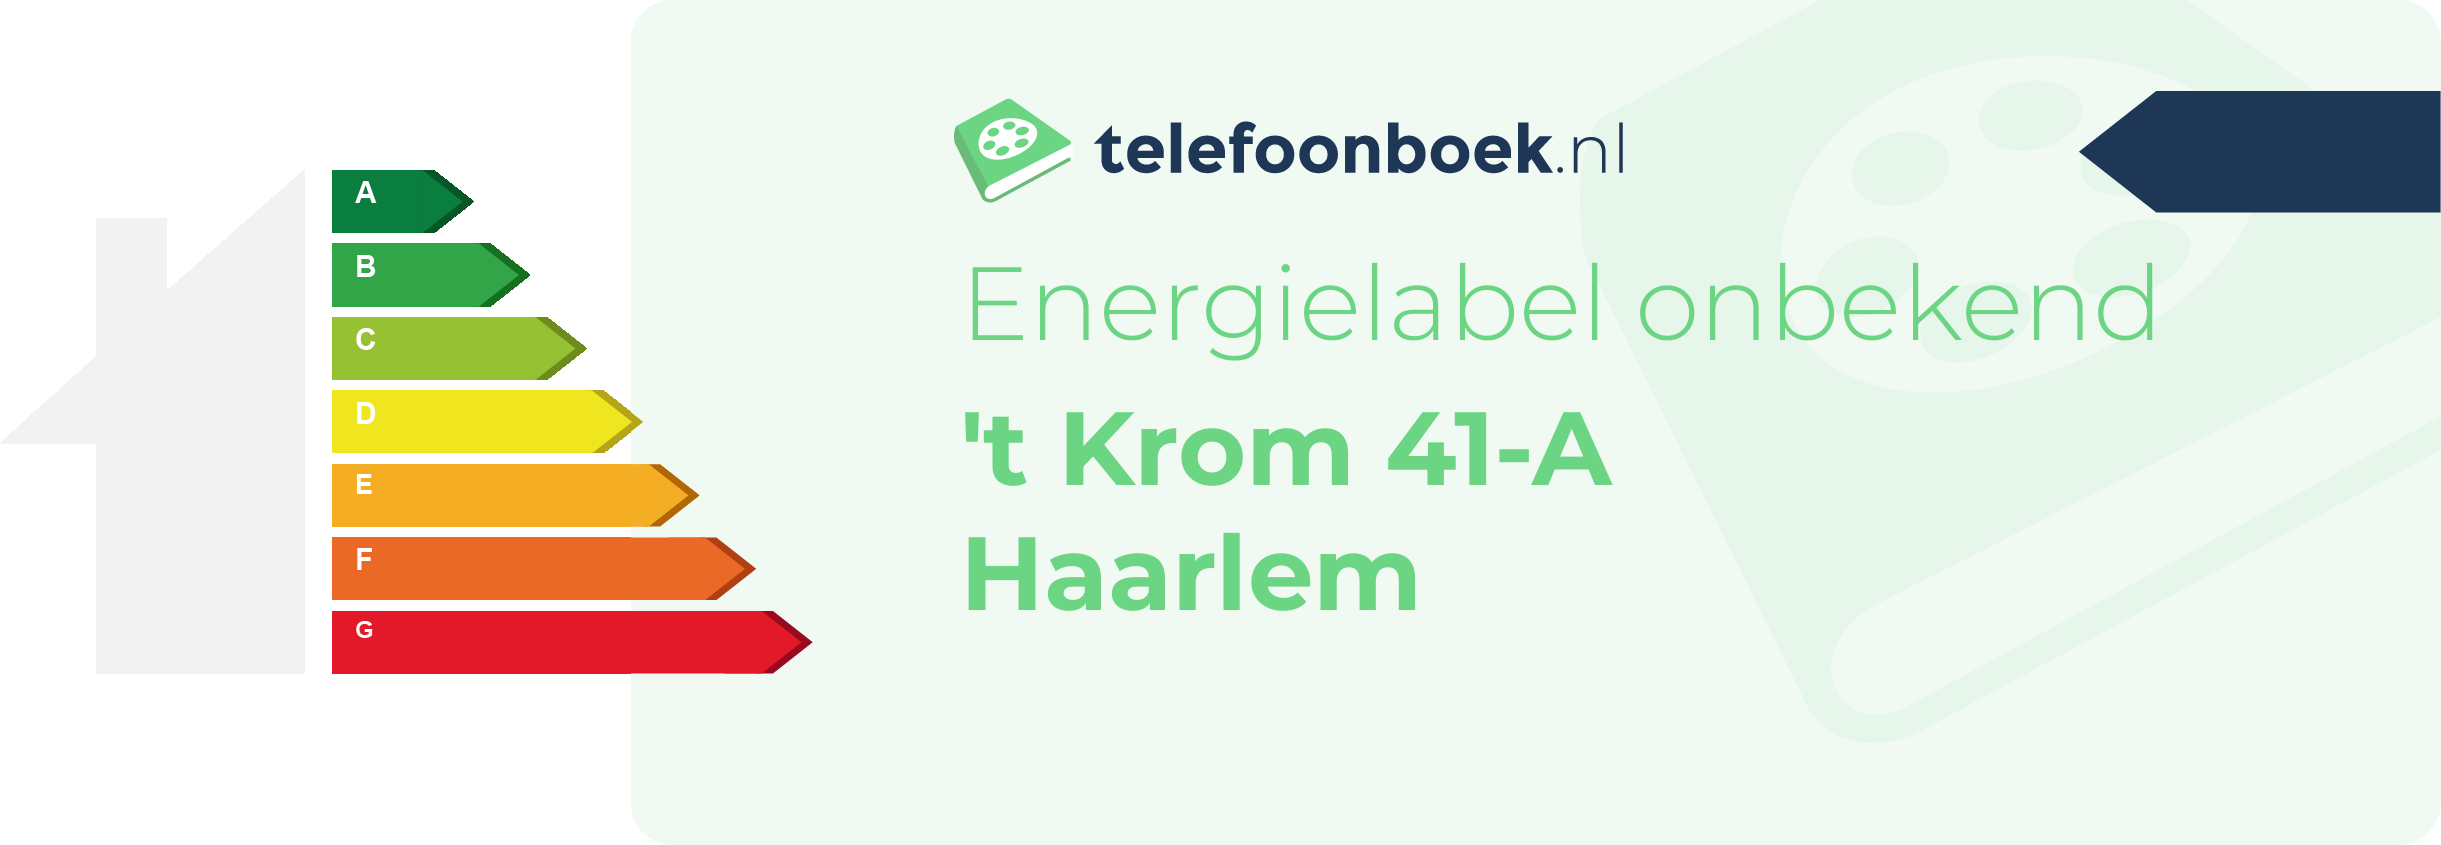 Energielabel 't Krom 41-A Haarlem